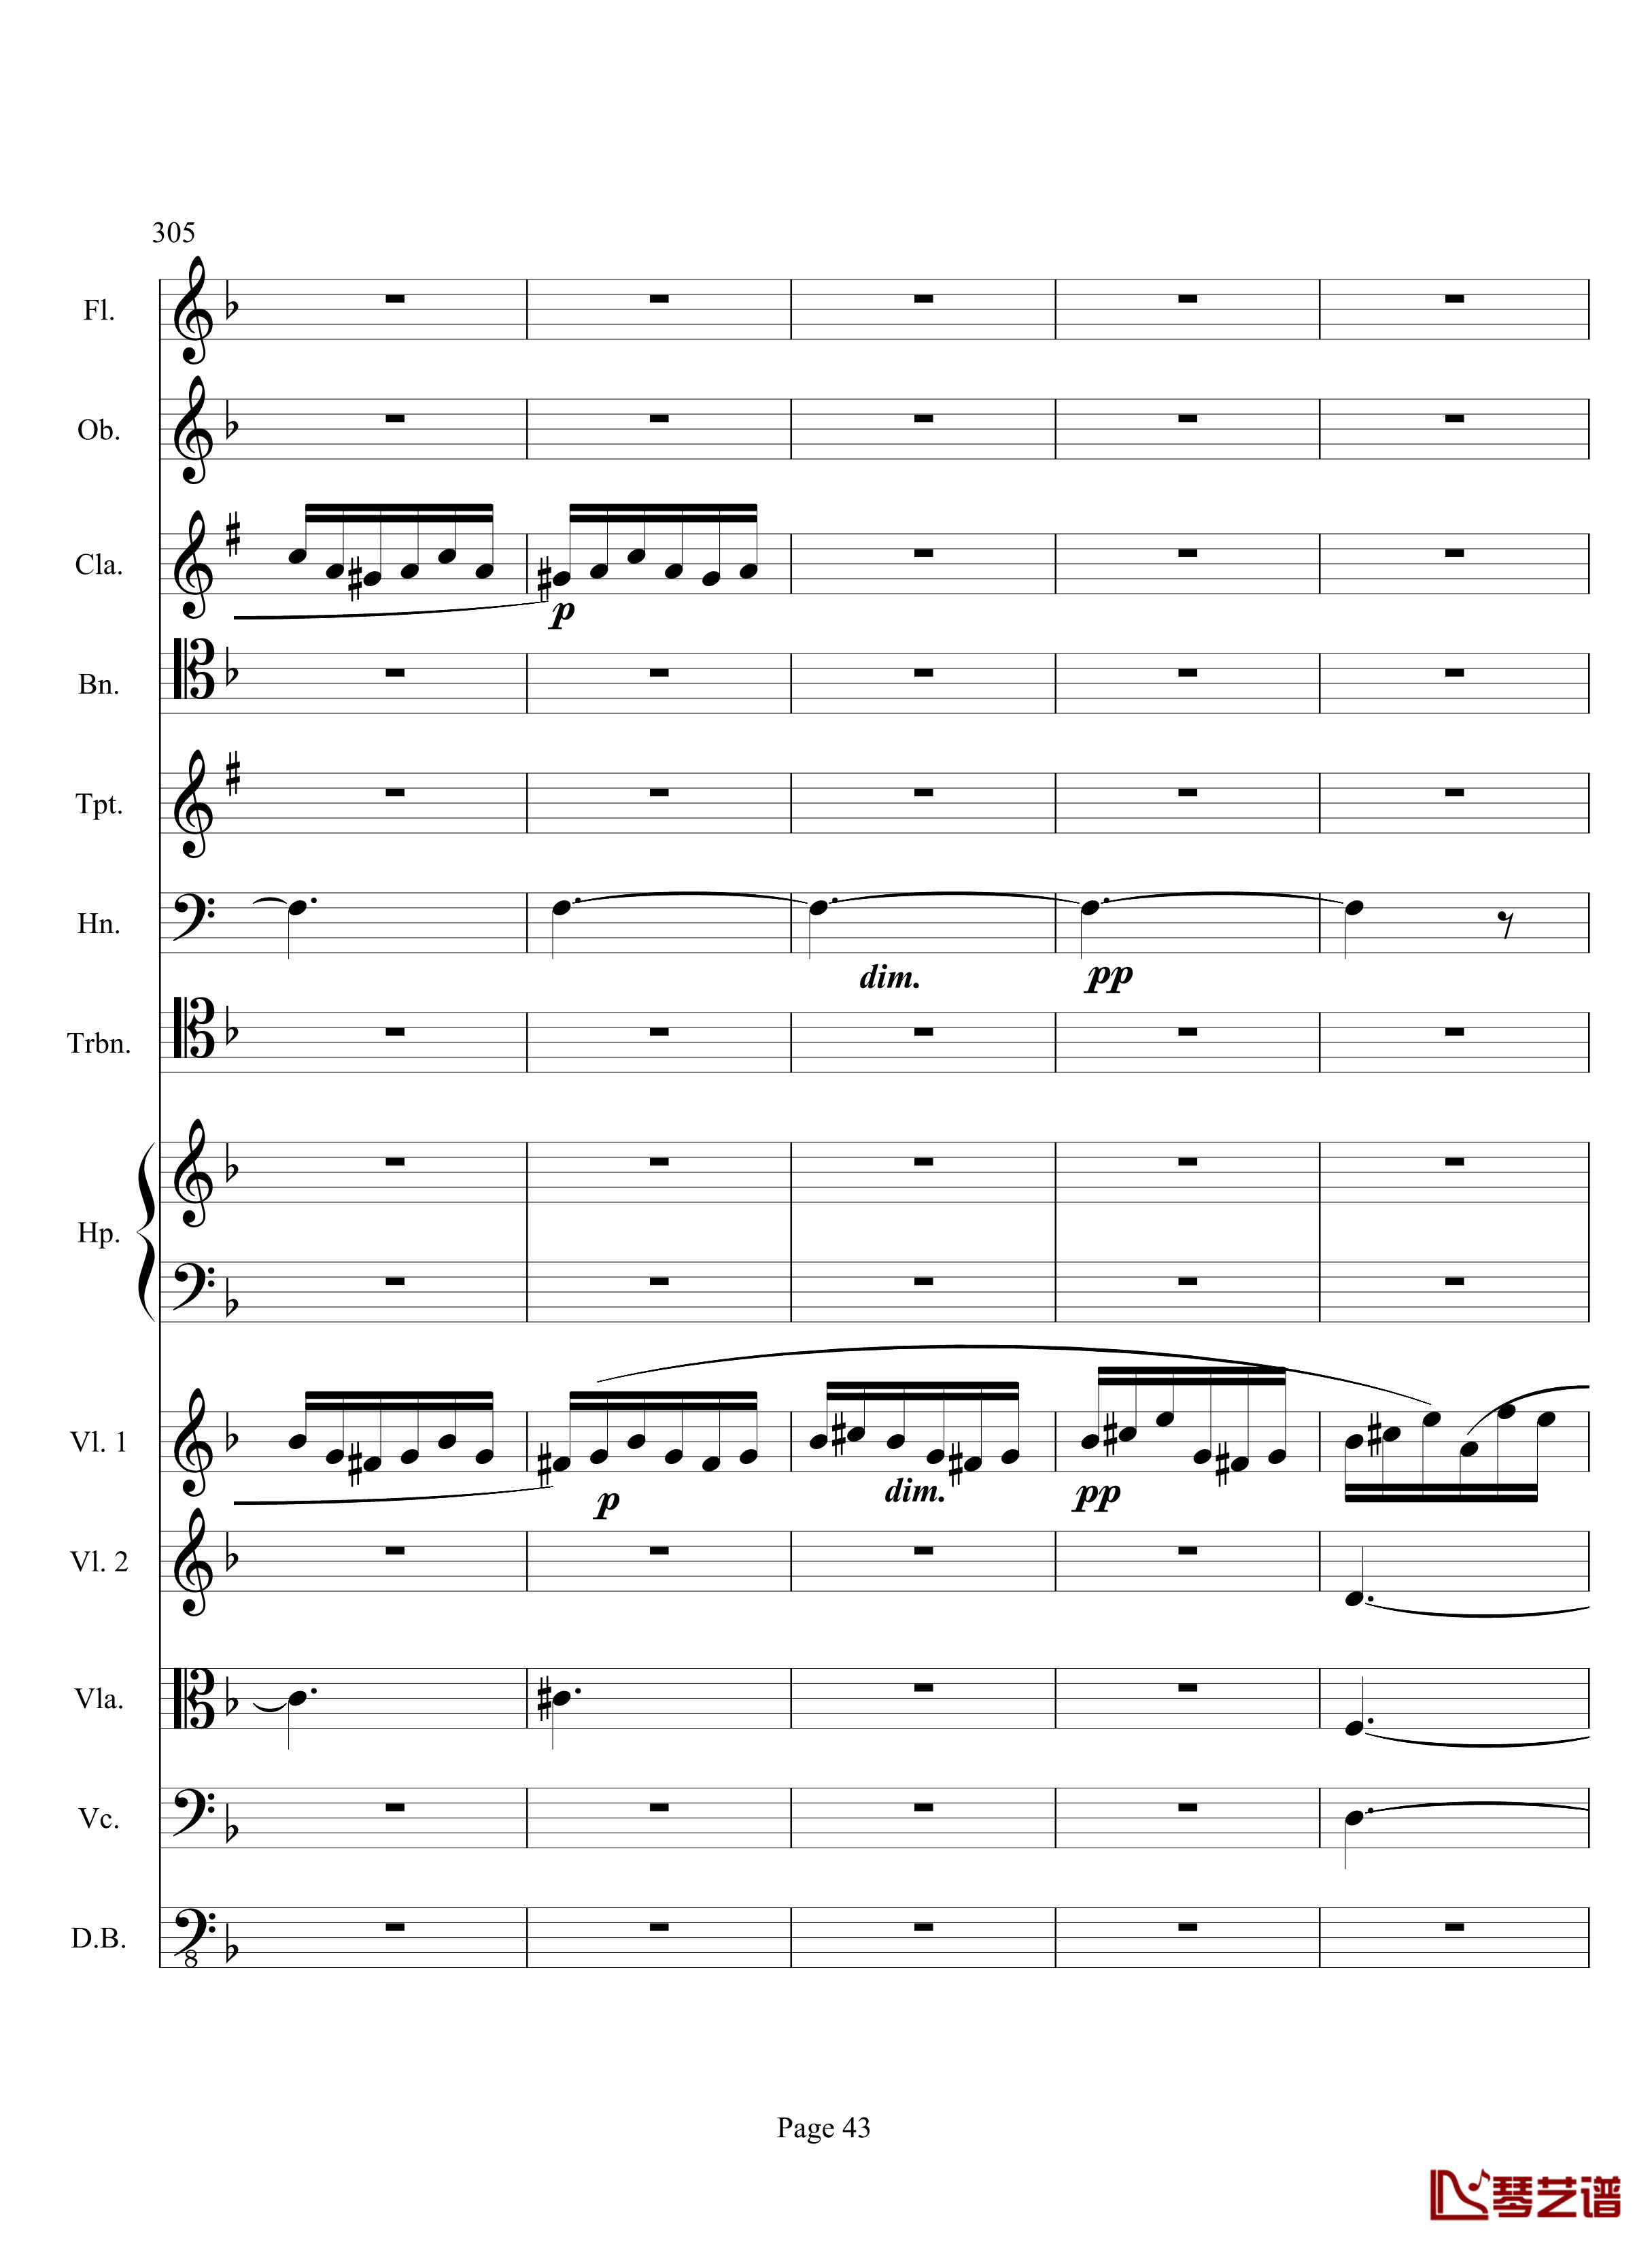 奏鸣曲之交响钢琴谱-第17首-Ⅲ-贝多芬-beethoven43